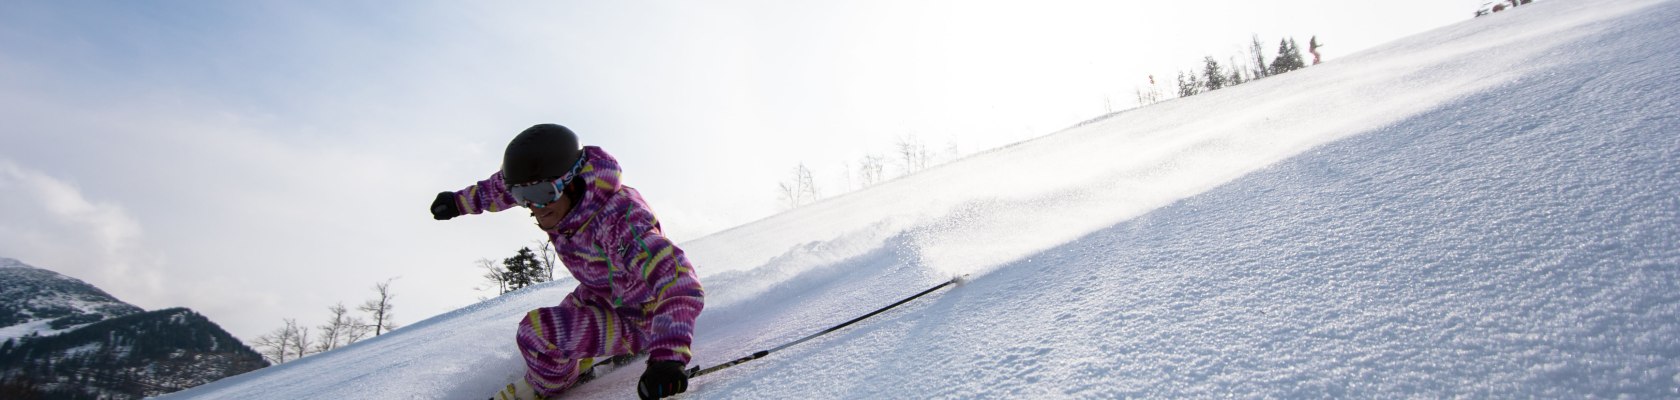 Skifahren am Ötscher, © Ötscherlift-Gesellschaft m.b.H.